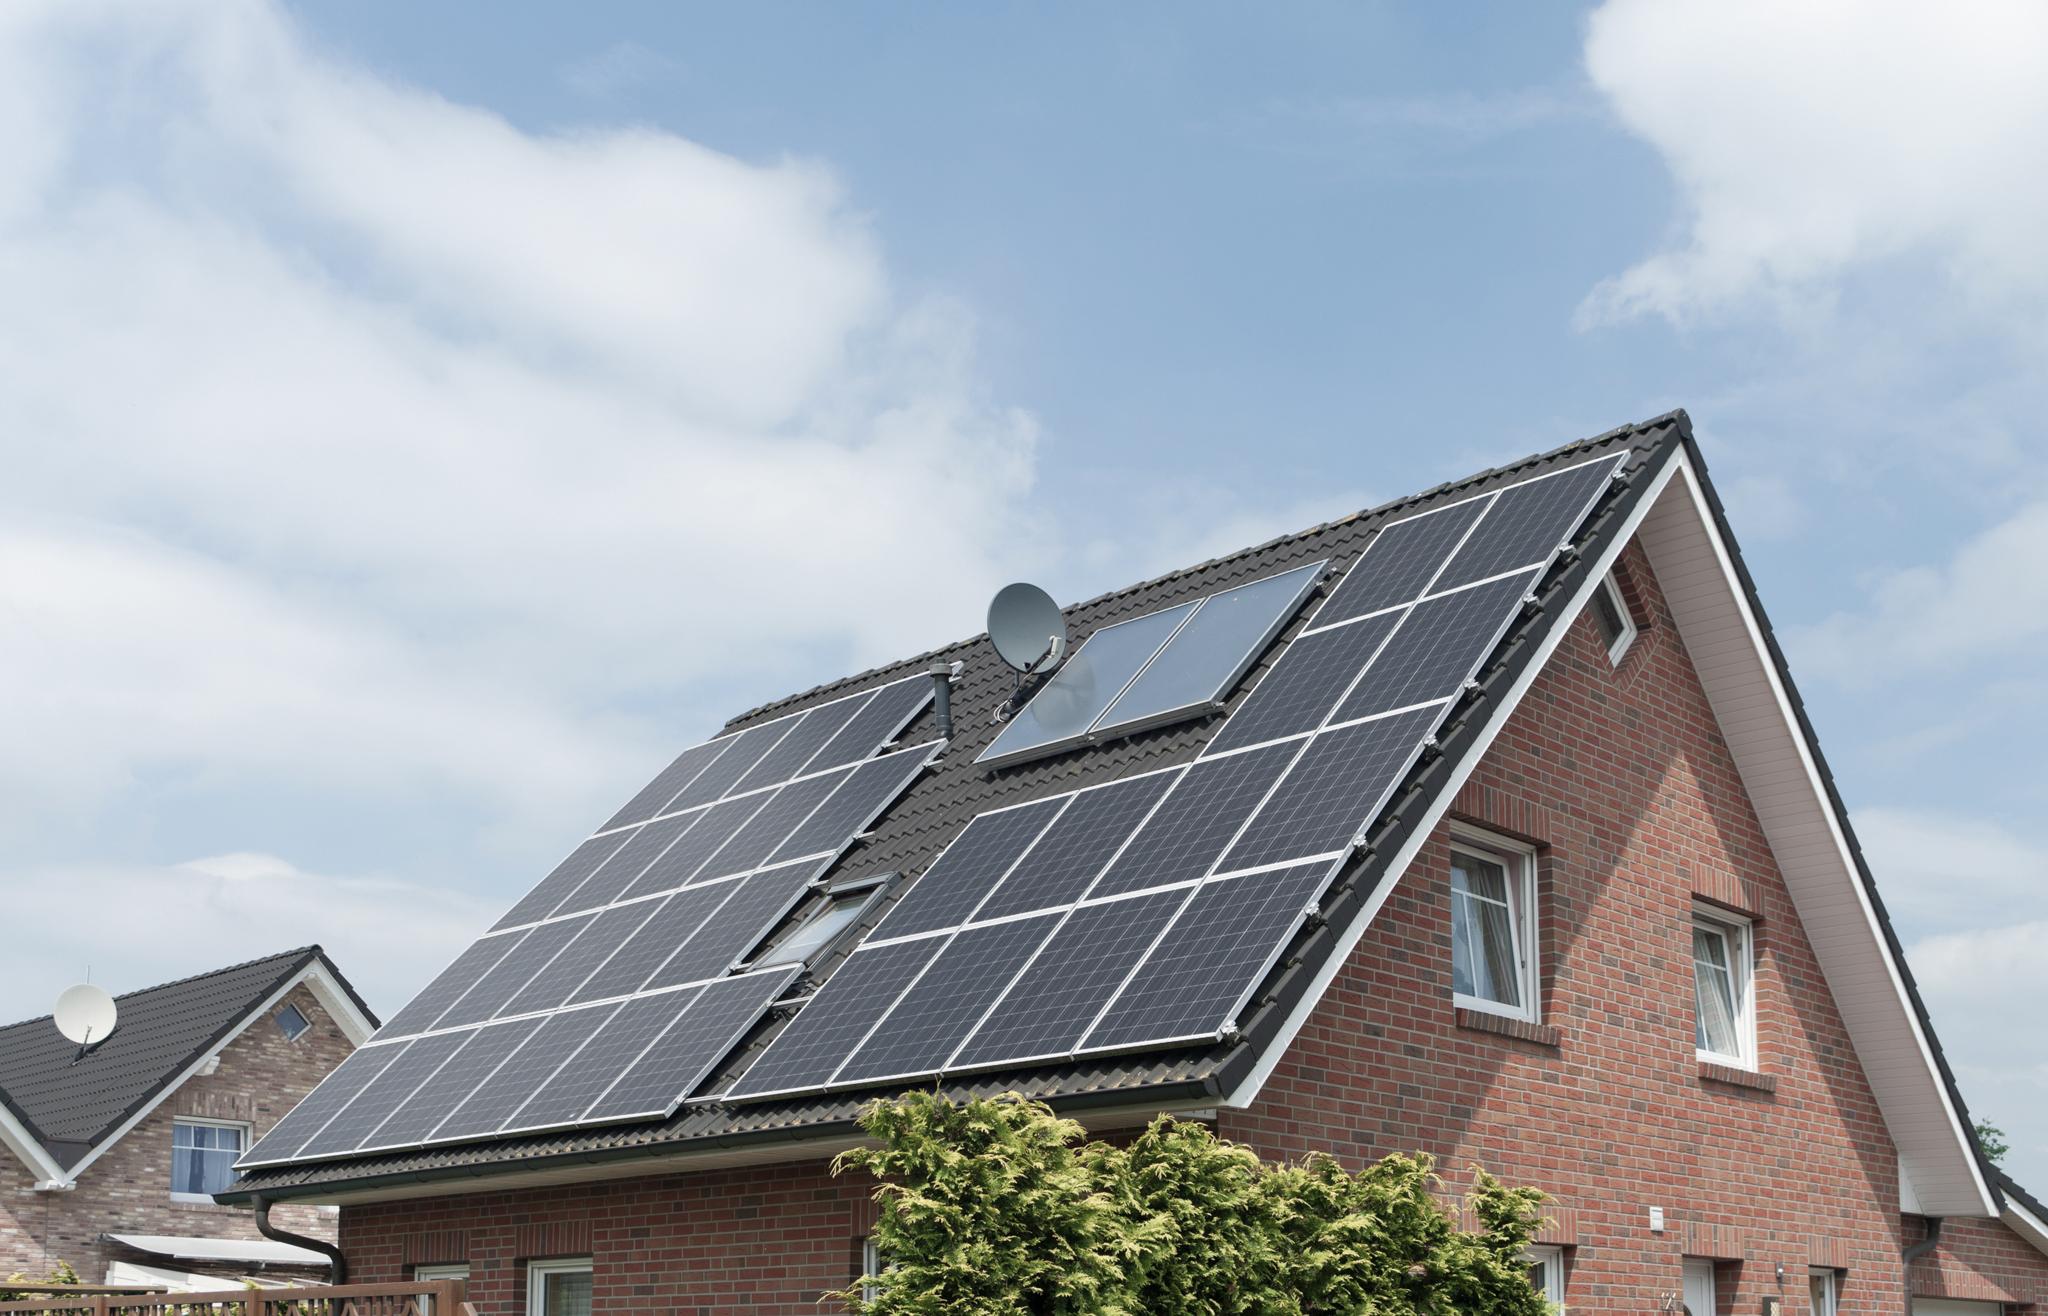 Einfamilienhaus mit Solaranlage auf dem Dach - zolar gegen den Klimawandel